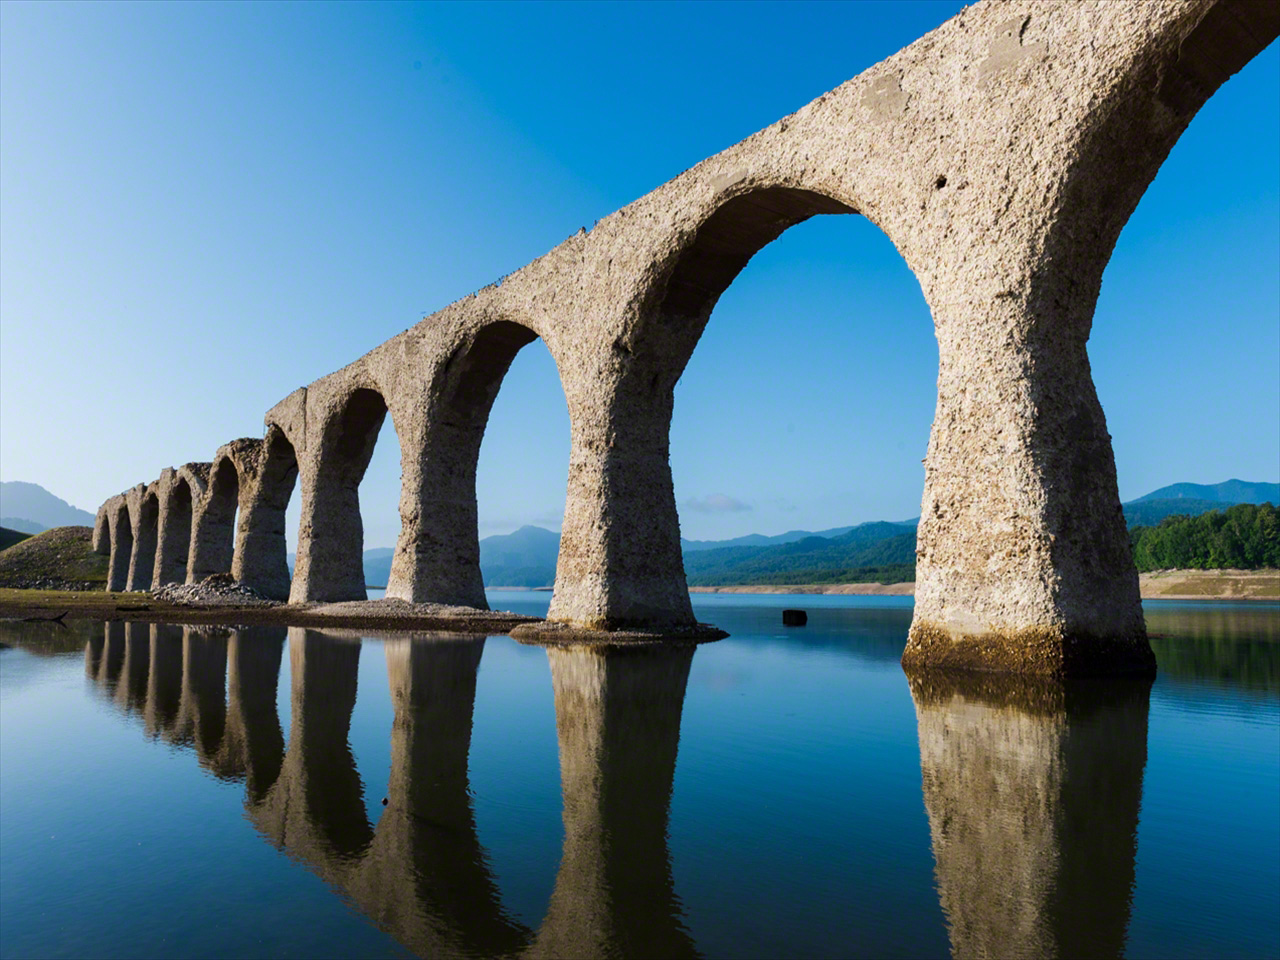 風のない朝、水面にアーチ橋が映る。「めがね橋」とも称される所以だ。7月